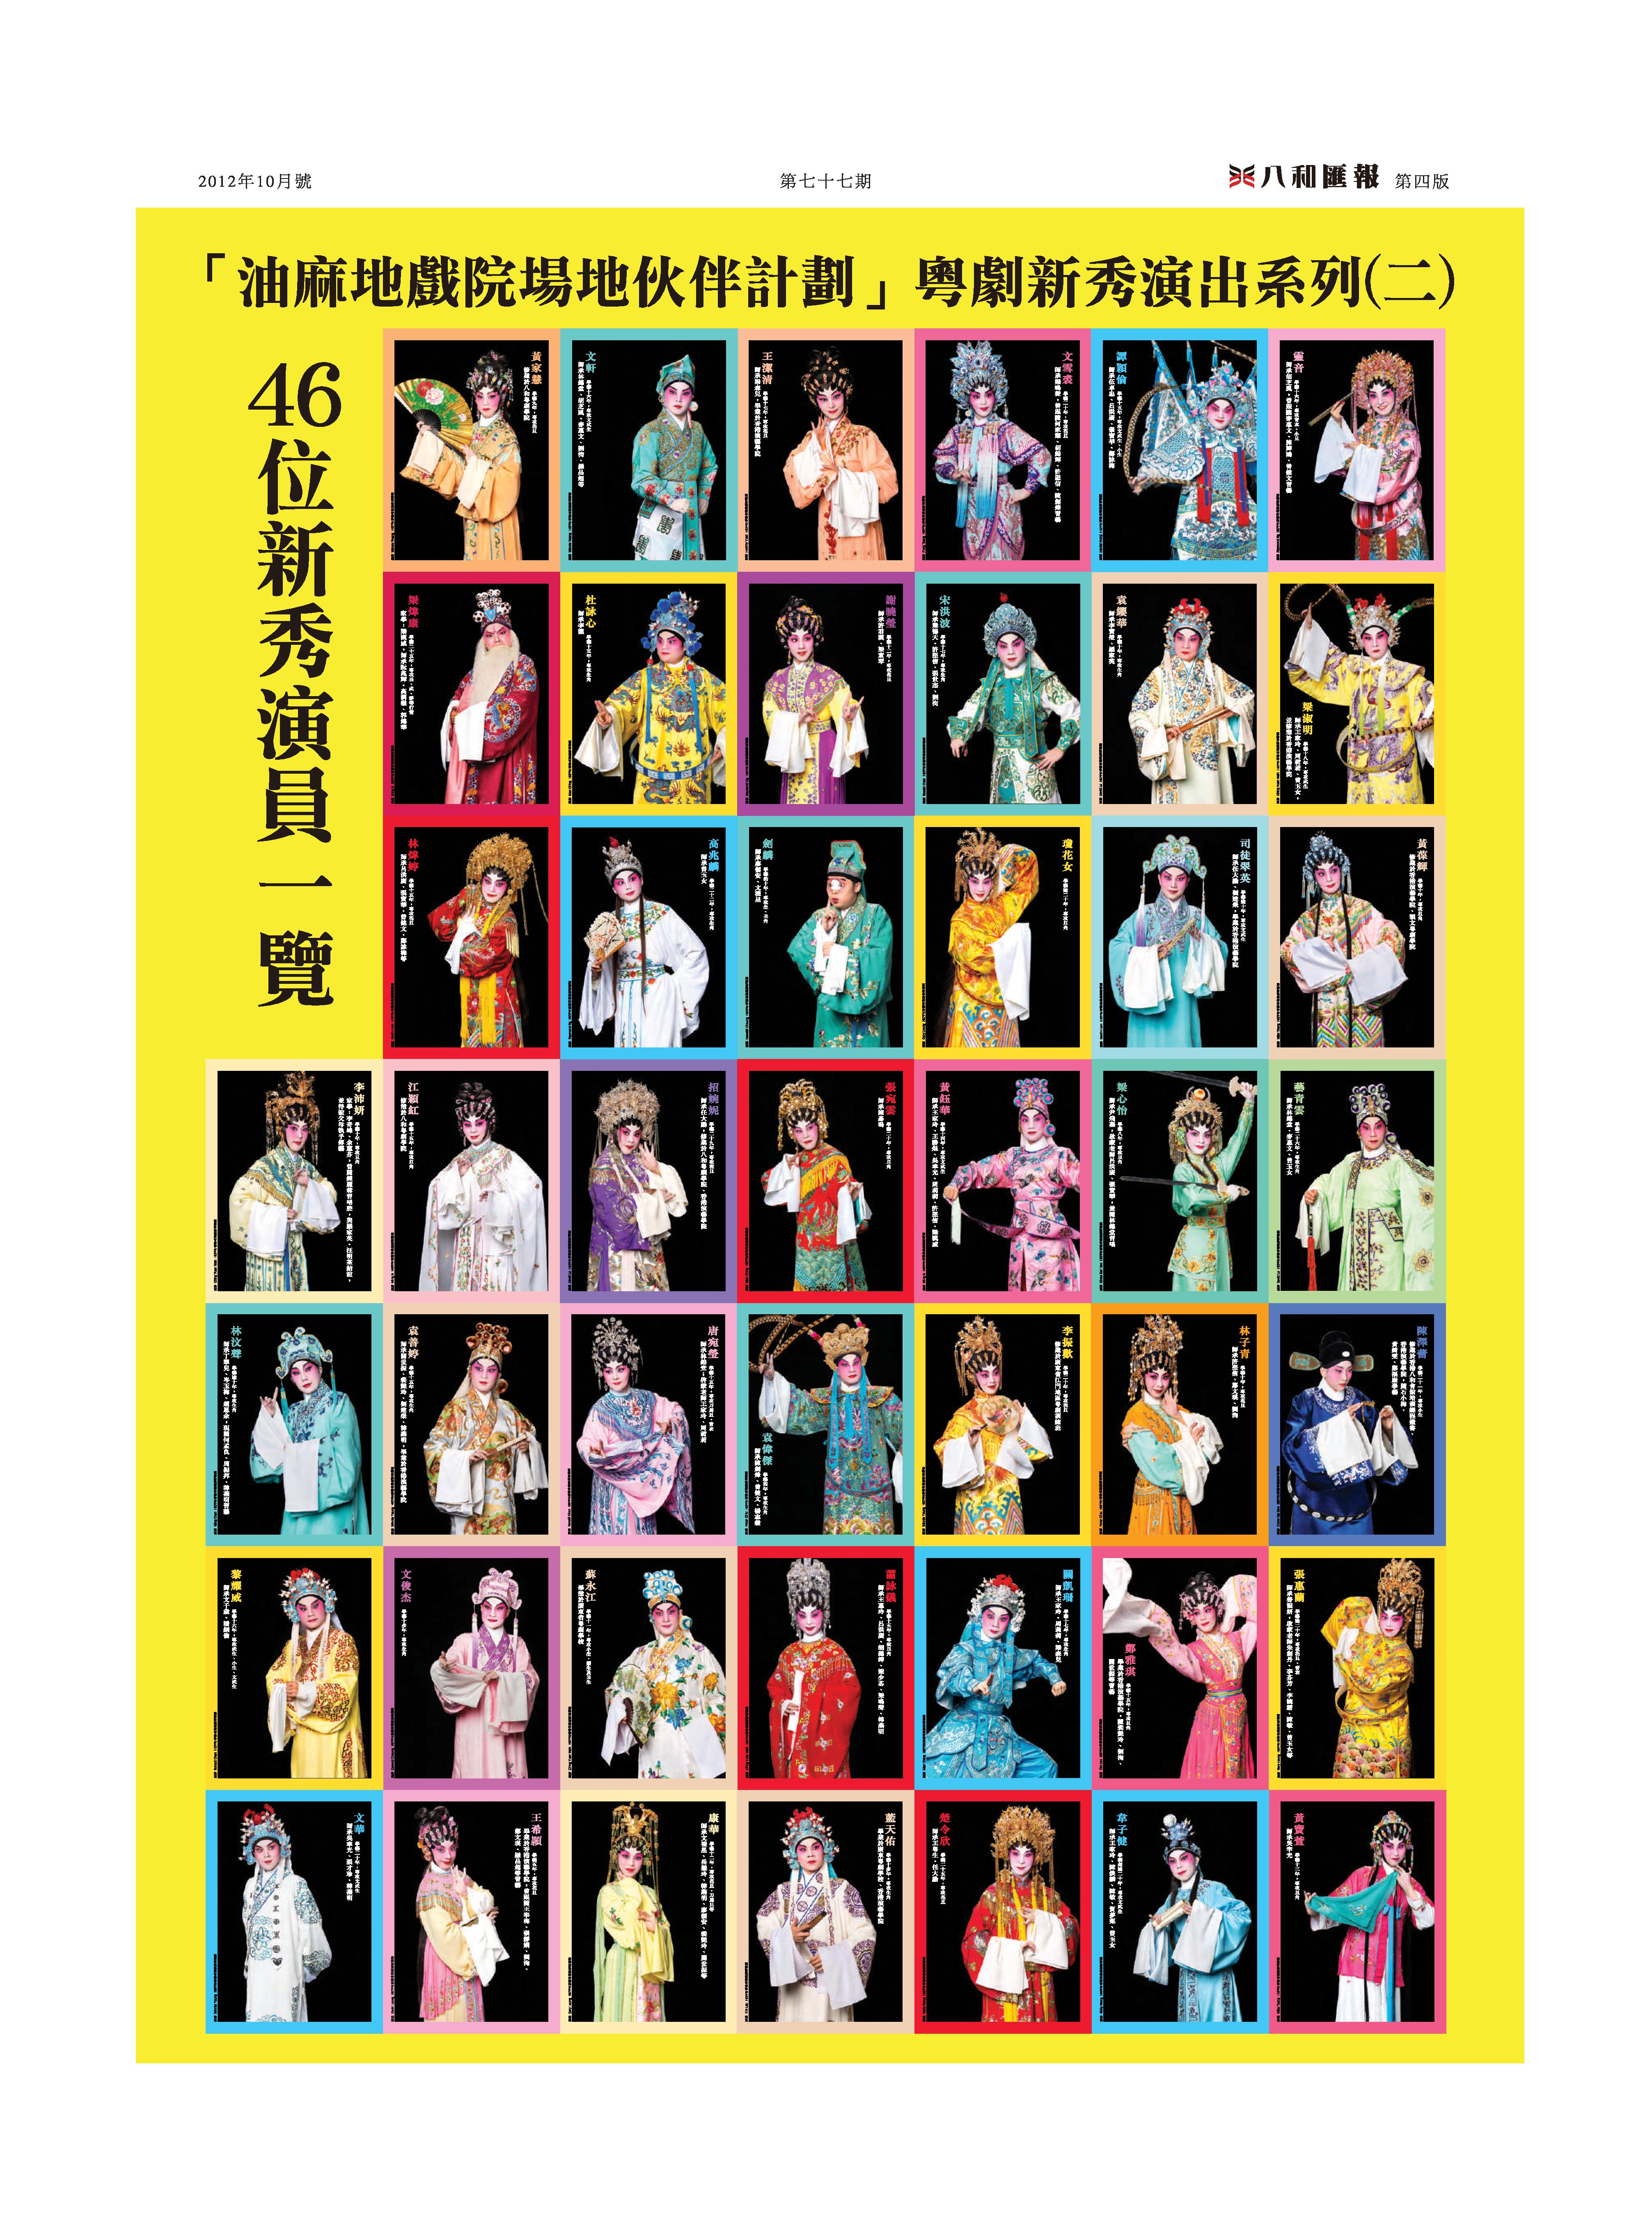 「油麻地戲院場地伙伴計劃」粵劇新秀演出系列(二)：46位新秀演員一覽